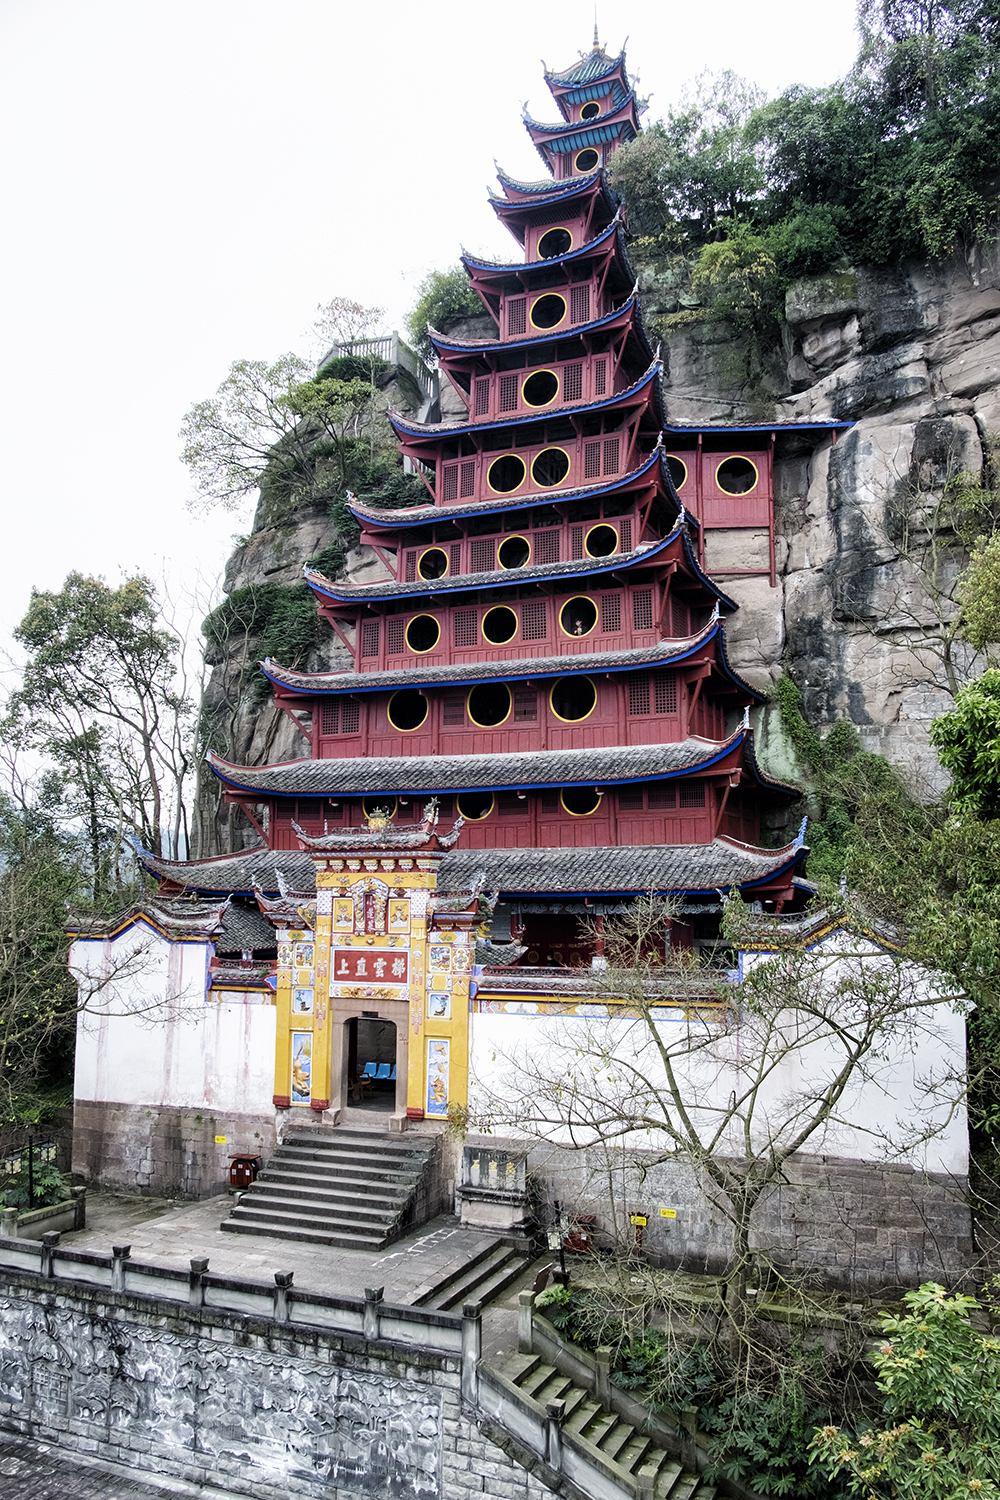 Shibaozhai Pagoda